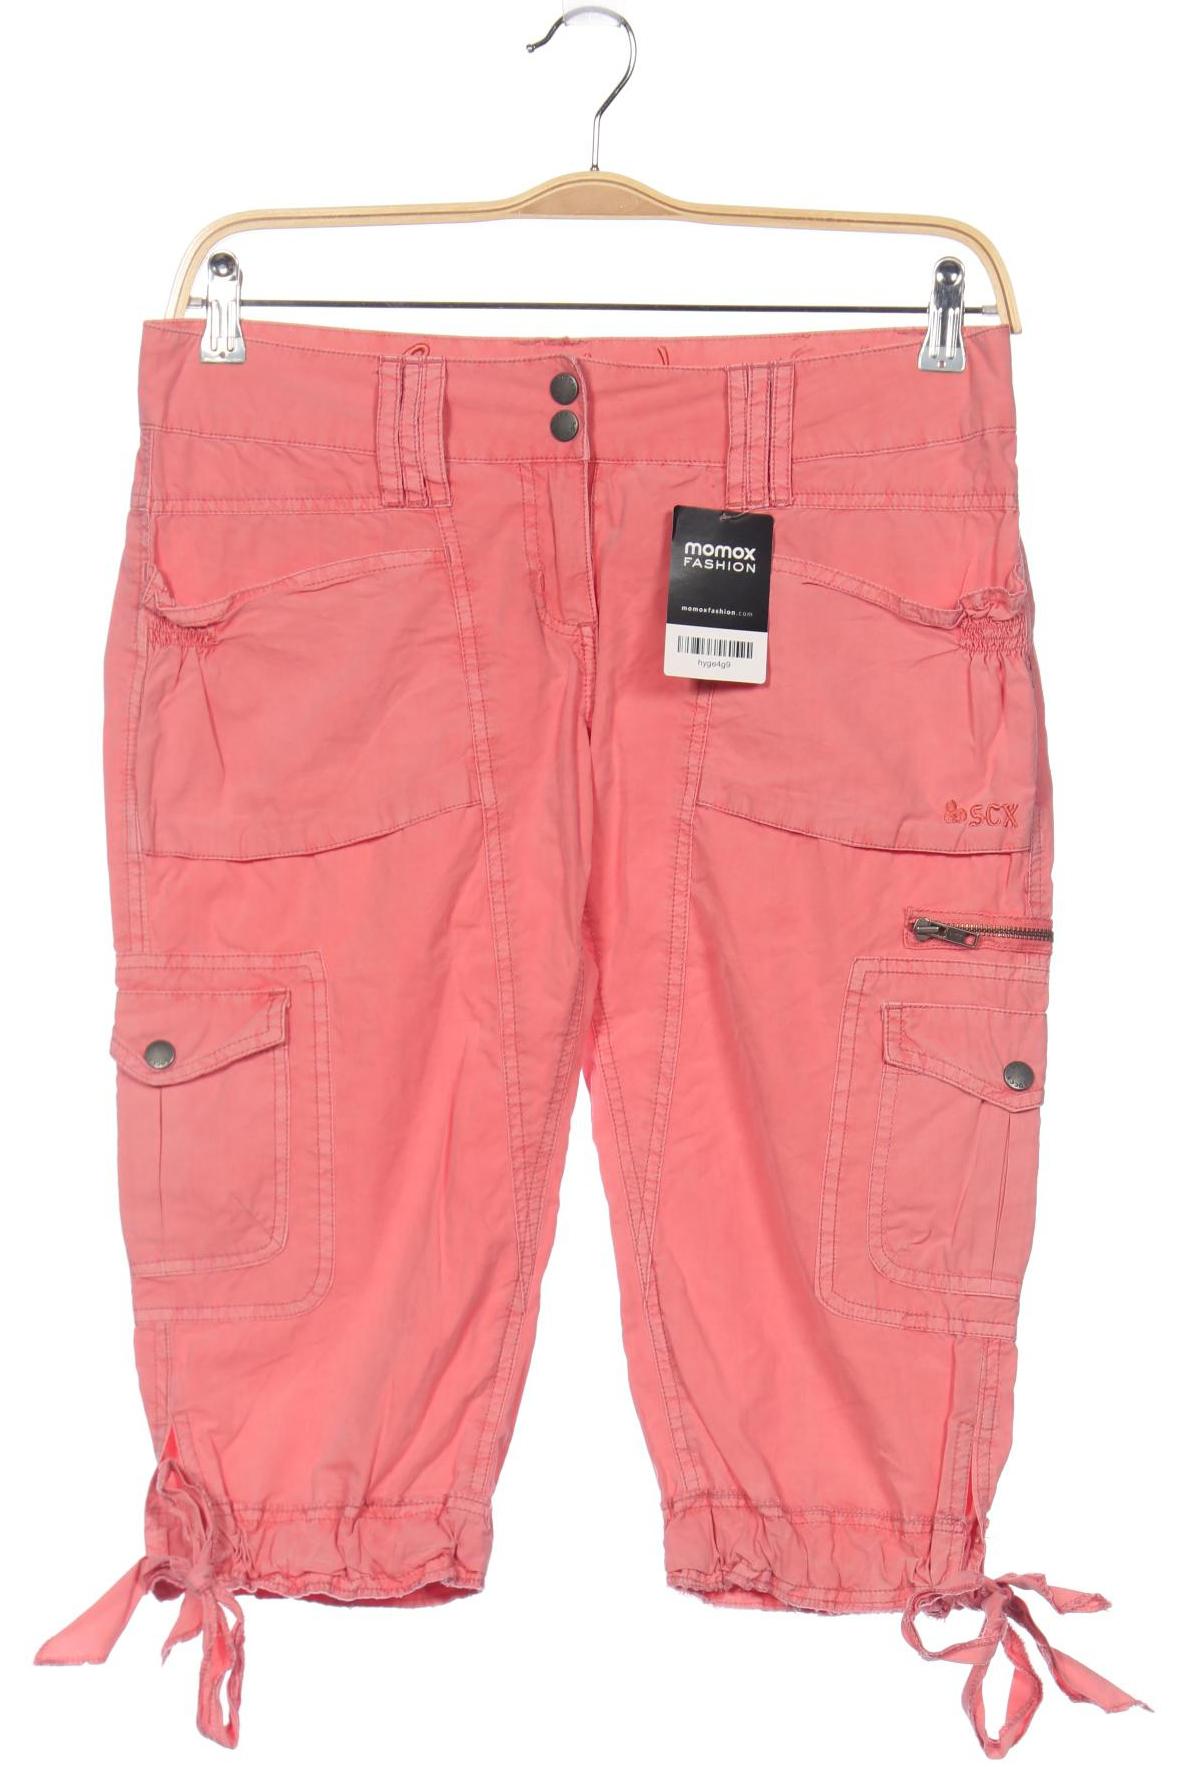 SOCCX Damen Shorts, pink von SOCCX